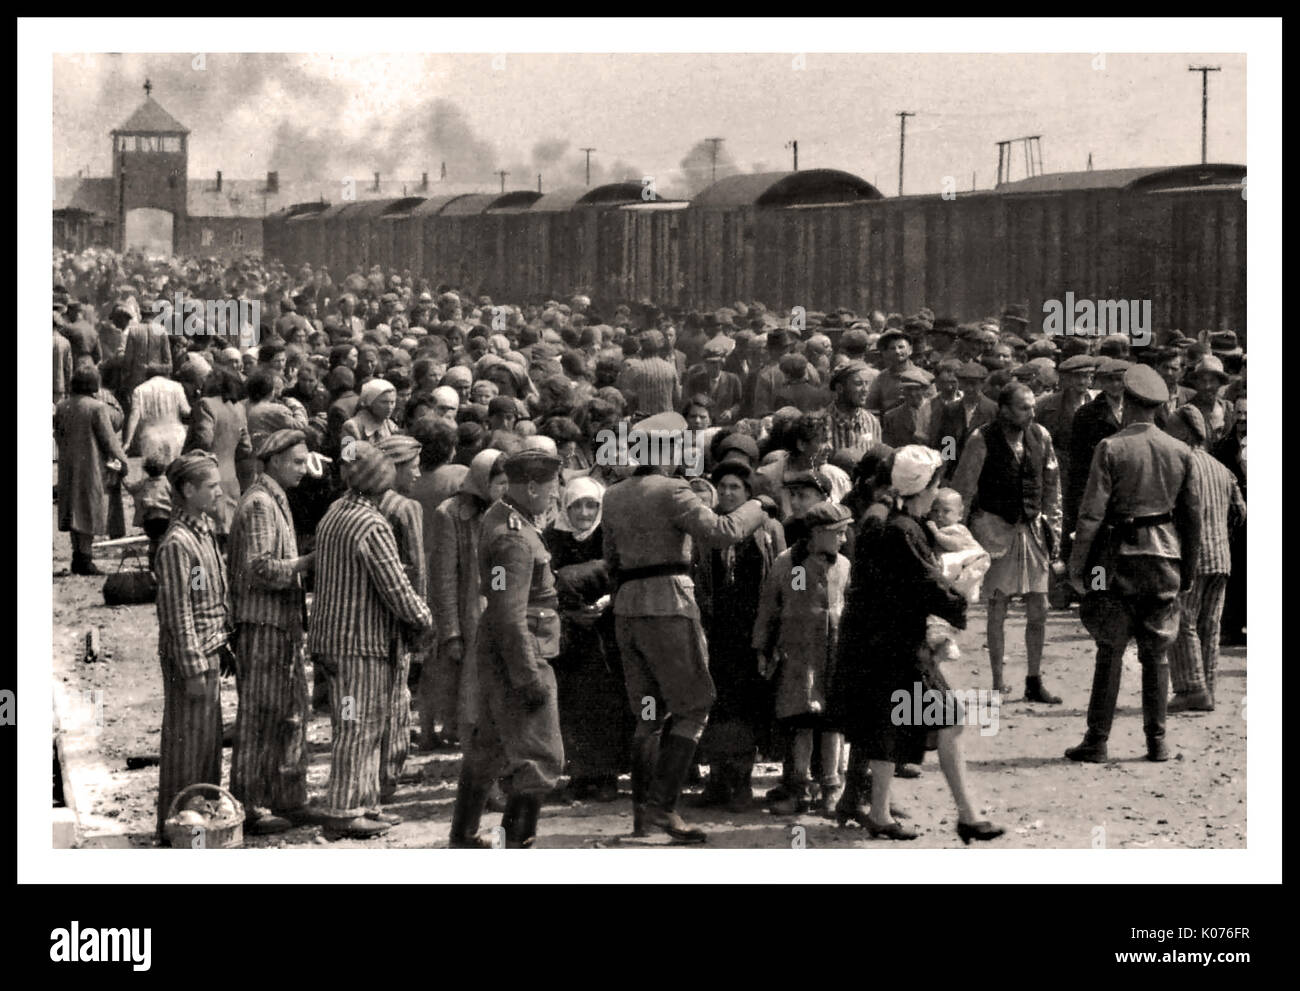 AUSCHWITZ-BIRKENAU ANKUNFT DER HOLOCAUST-GEFANGENEN - Eine starre Vision einer Hölle auf Erden. 1944, Nazis "Grading" (Leben oder peremptory Tod) ahnungslos vor kurzem angekommen Erwachsene und Kinder auf Eisenbahnstrecke, vor dem Eingang zum Vernichtungslager Auschwitz-Birkenau. Das berüchtigte Auschwitz-Lager wurde auf Befehl Adolf Hitlers in den 1940er Jahren während der Besetzung Polens durch Nazi-Deutschland während des Weltkrieges 2 gegründet, weiter ermöglicht durch Heinrich Luitpold Himmler, den Reichsführer des Schutzstaffels, und führendes Mitglied der Nazi-Partei Deutschlands Stockfoto